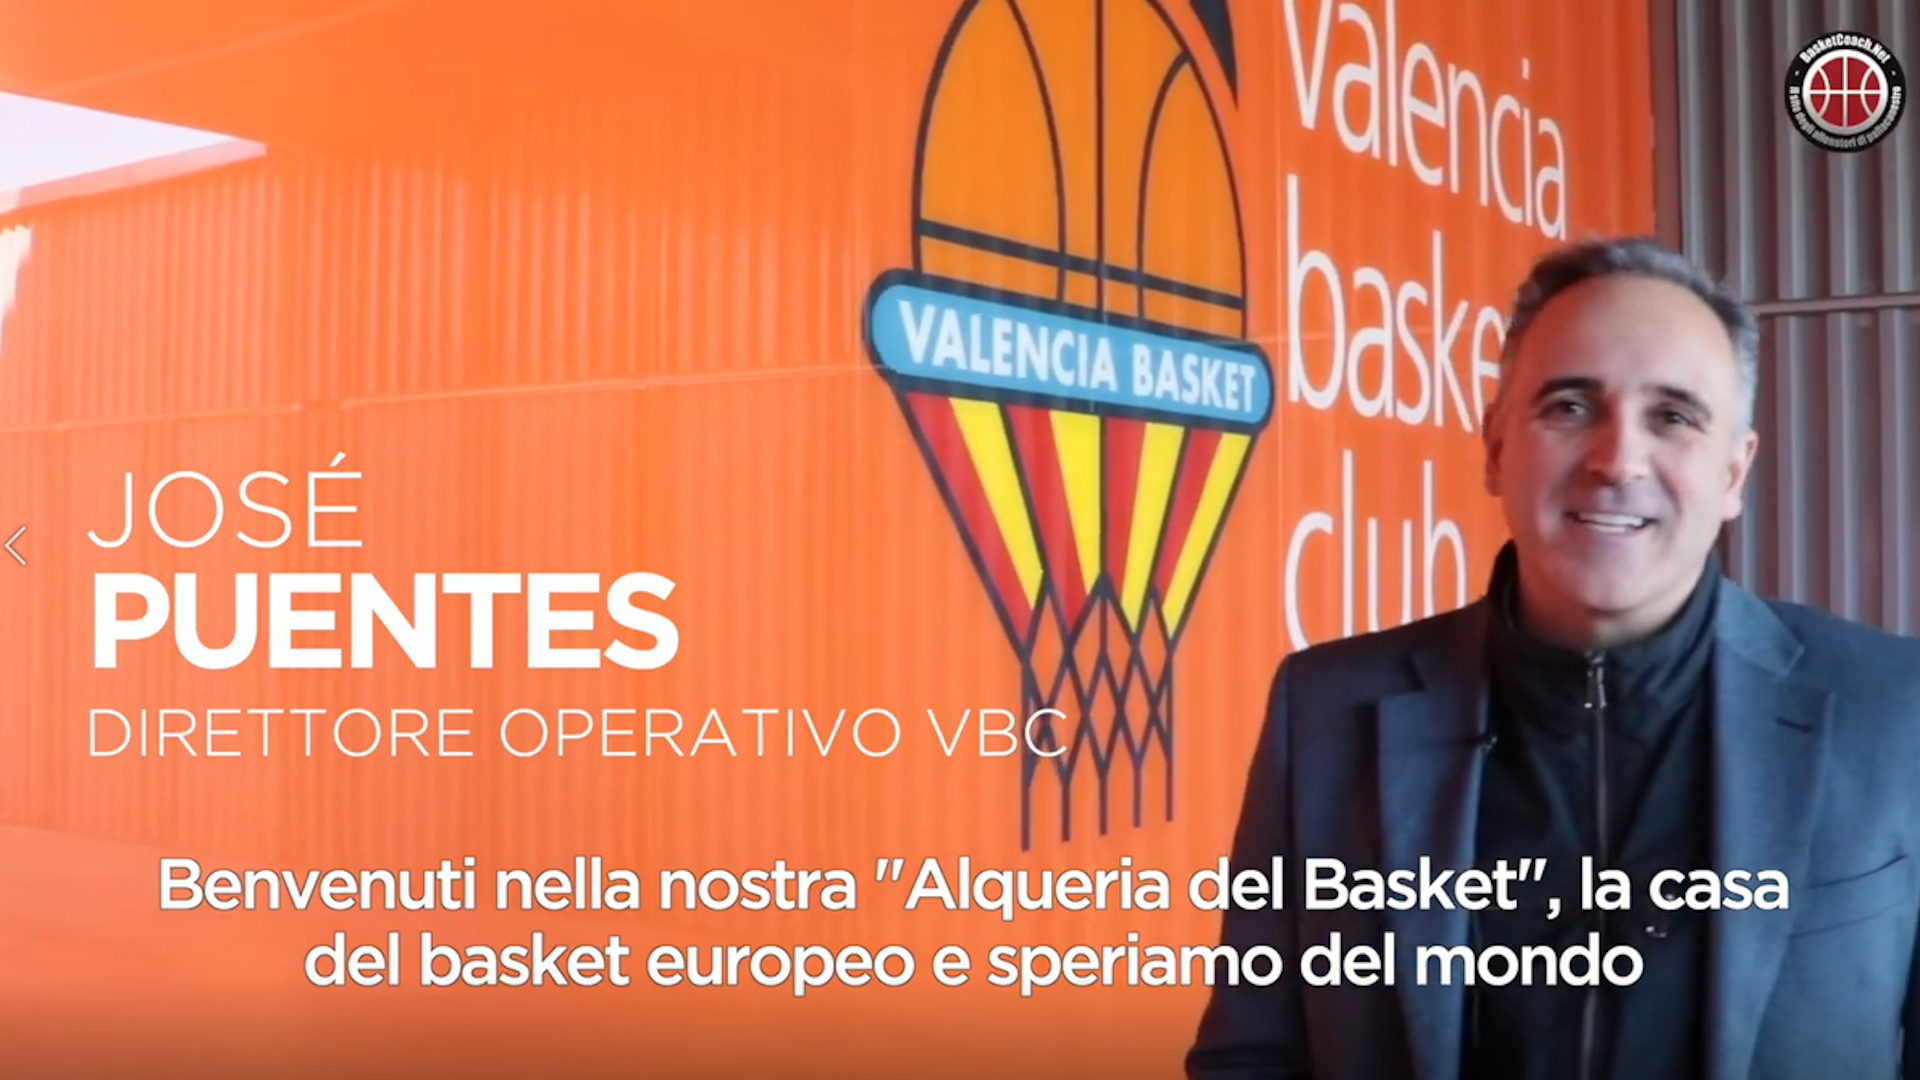 <p>L&#39;alqueria del Basket Valenciano</p>
